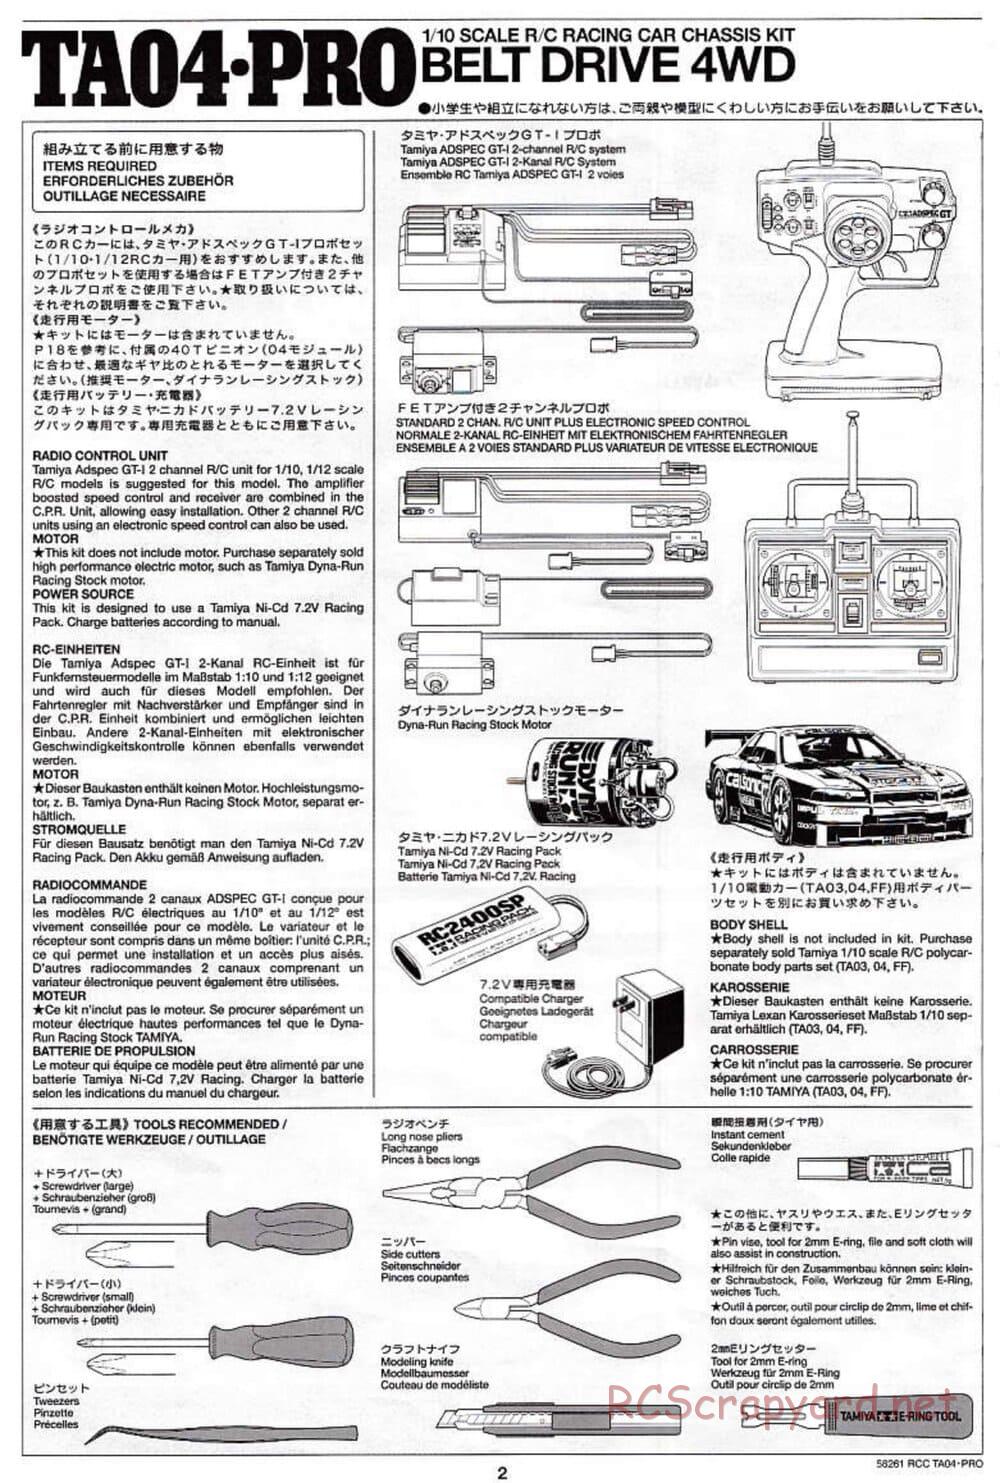 Tamiya - TA-04 Pro Chassis - Manual - Page 2